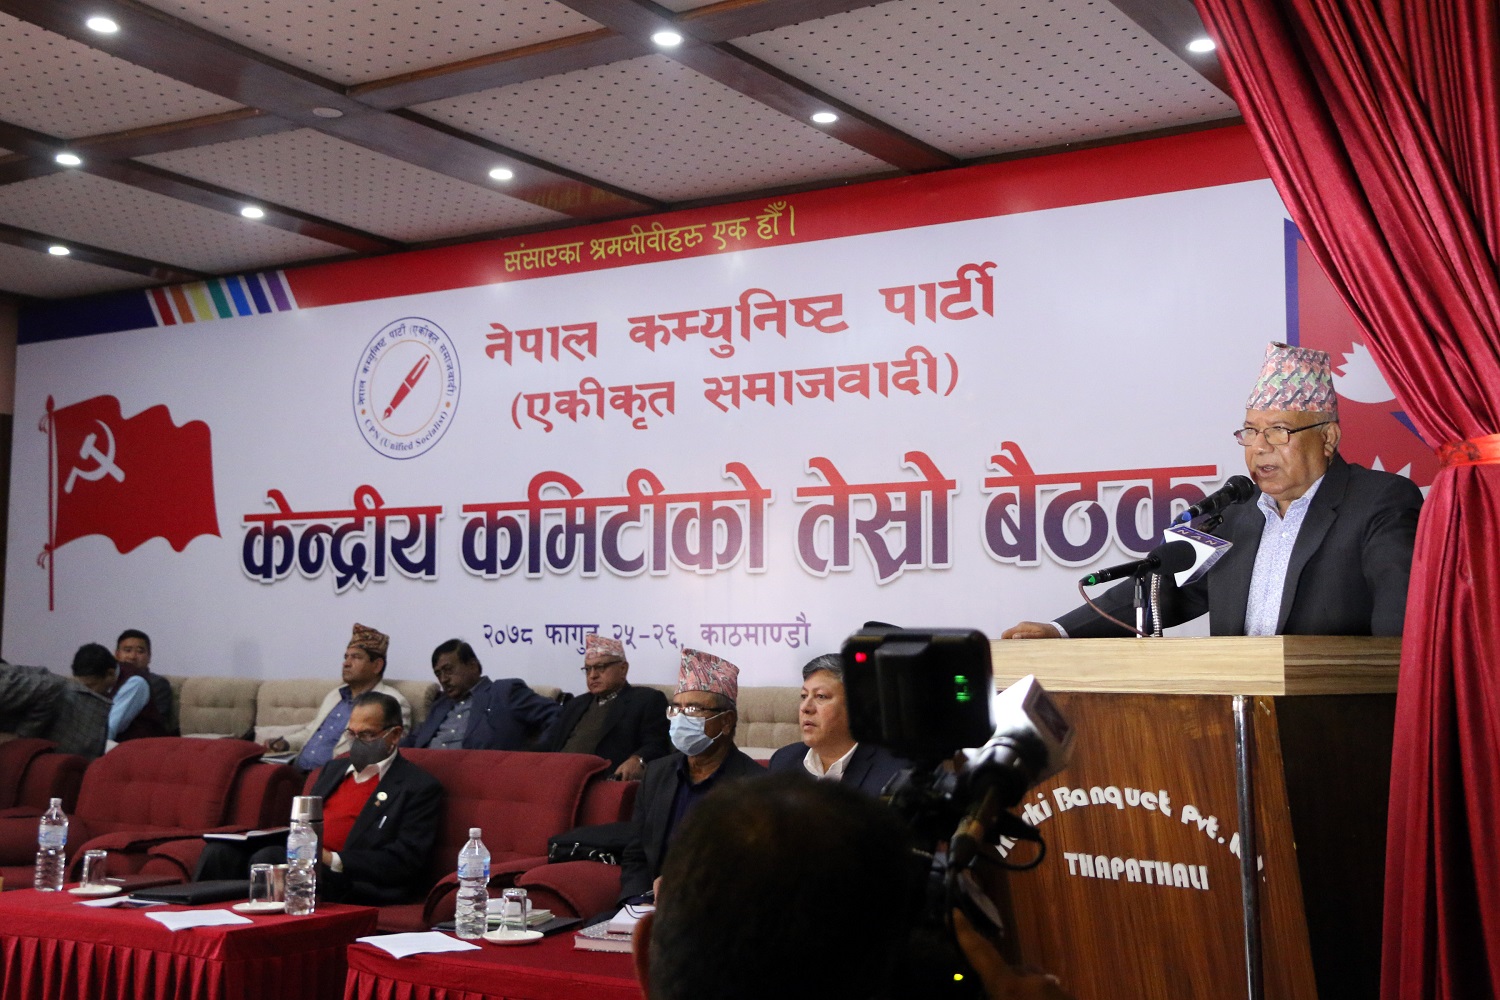 जनताबाट आशा र विश्वास आर्जन गरिरहेका छौँ : अध्यक्ष नेपाल (भिडियो रिपोर्टसहित)